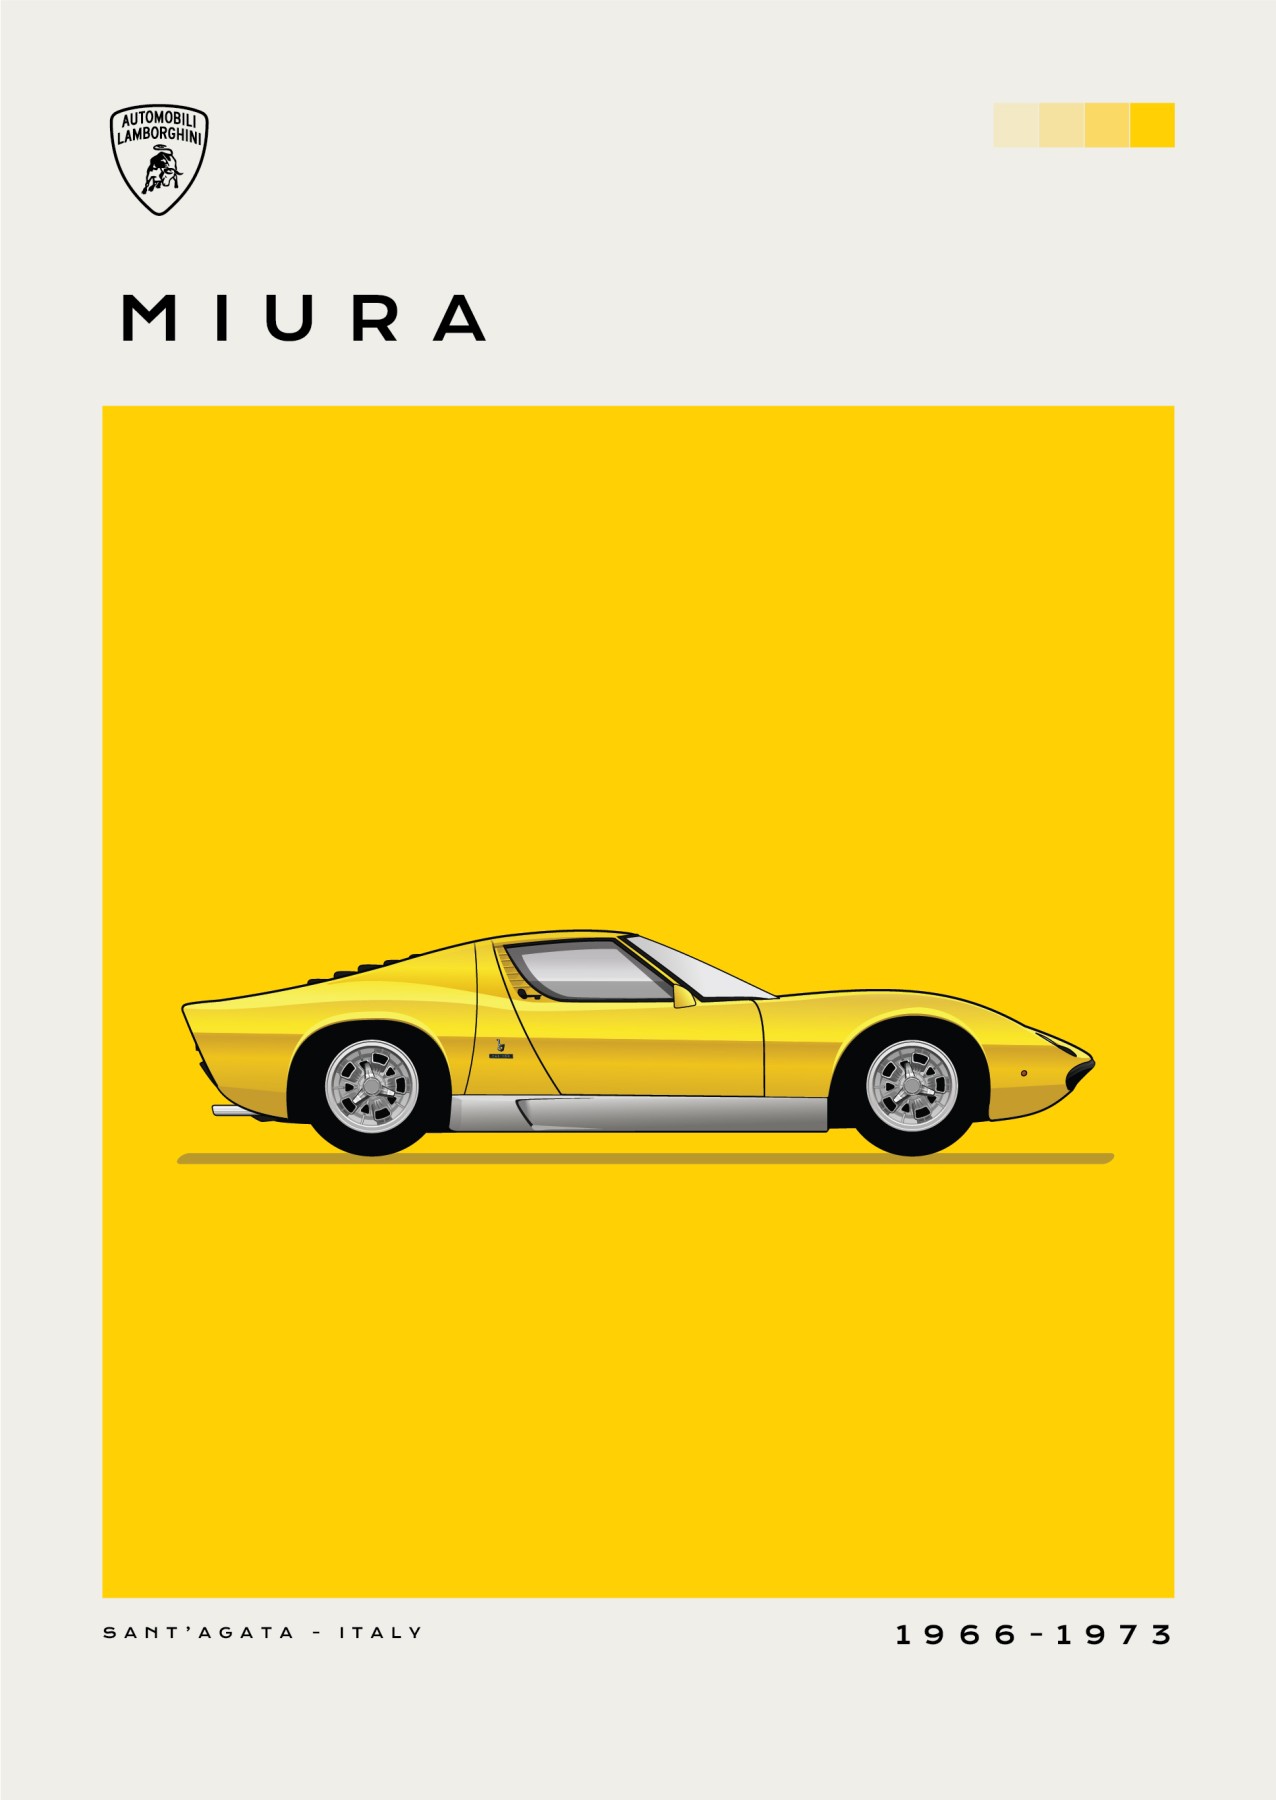 Automobili - Lamborghini - Miura - Yellow